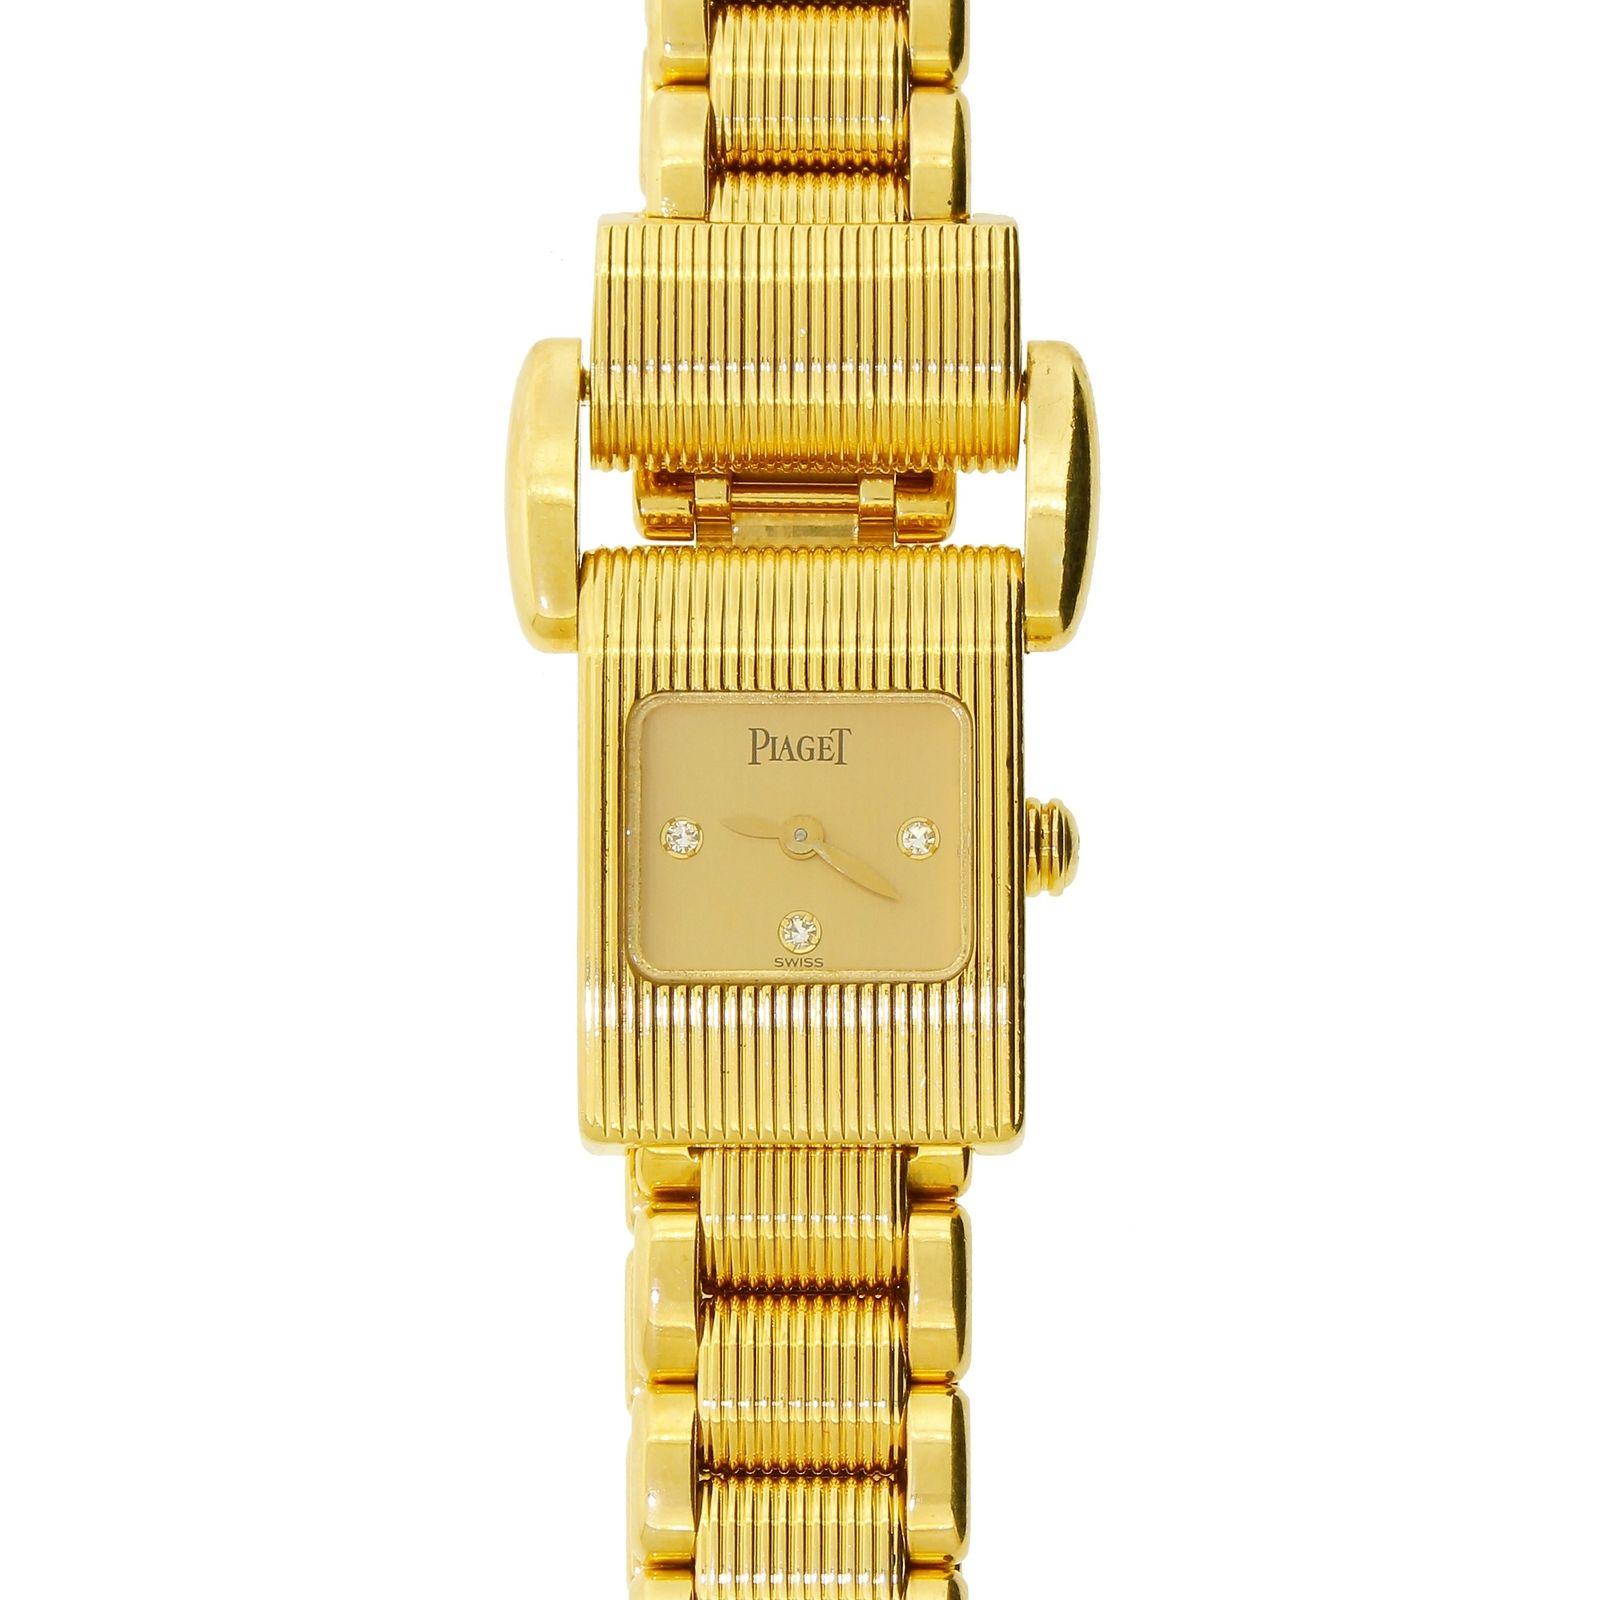  Piaget Montre Miss Protocole en or massif 18 carats 750 avec cadran de couleur brun clair et diamants